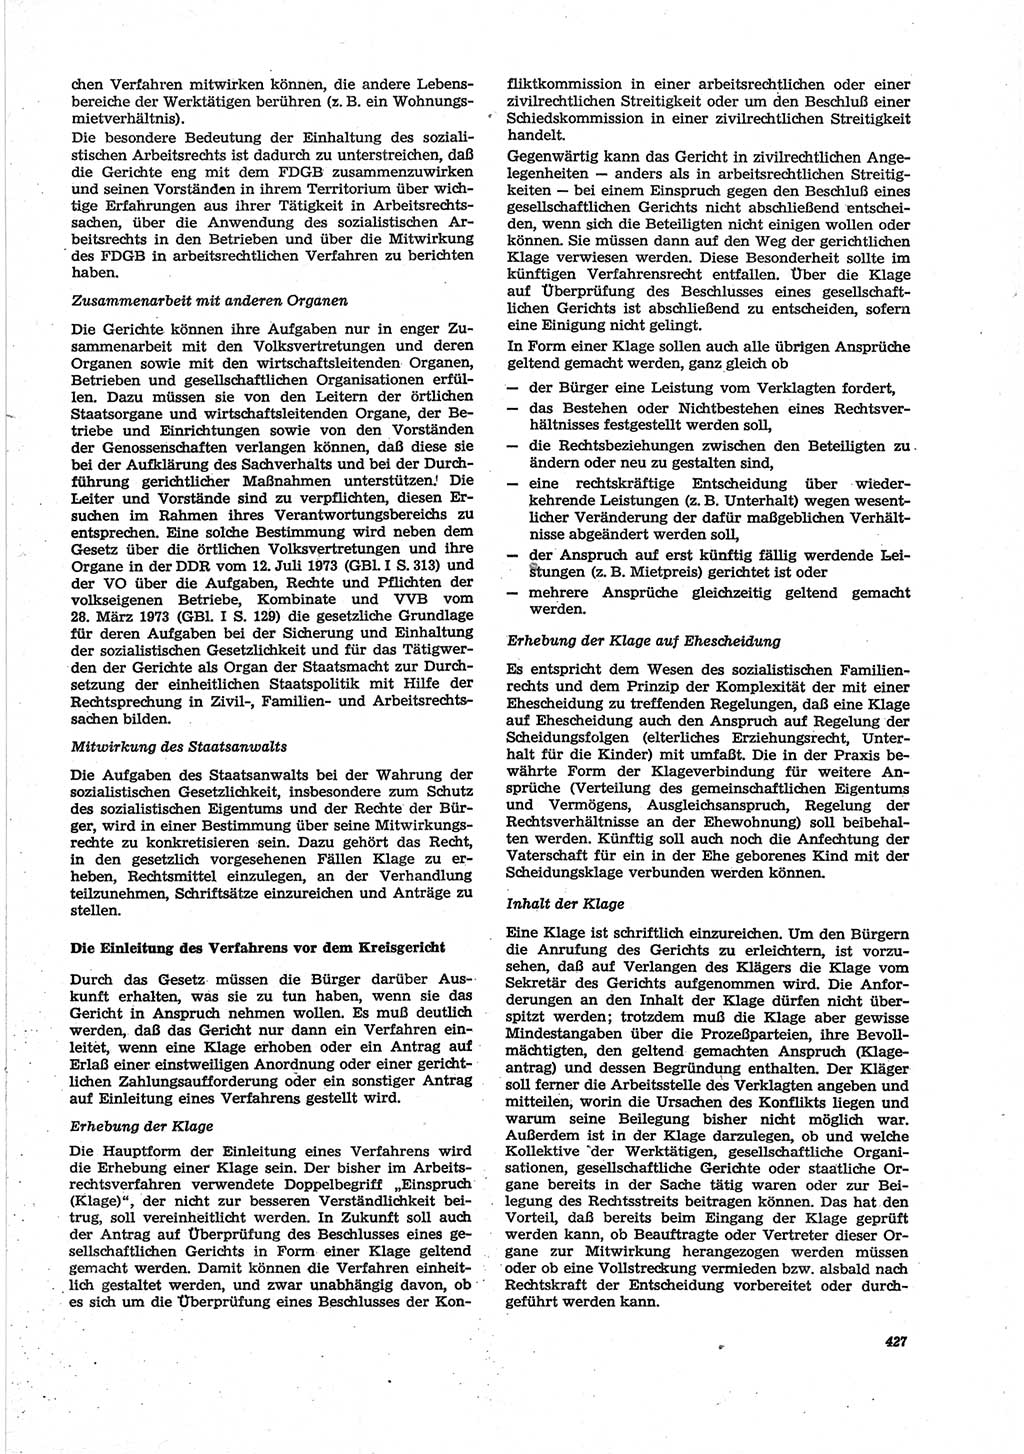 Neue Justiz (NJ), Zeitschrift für Recht und Rechtswissenschaft [Deutsche Demokratische Republik (DDR)], 28. Jahrgang 1974, Seite 427 (NJ DDR 1974, S. 427)